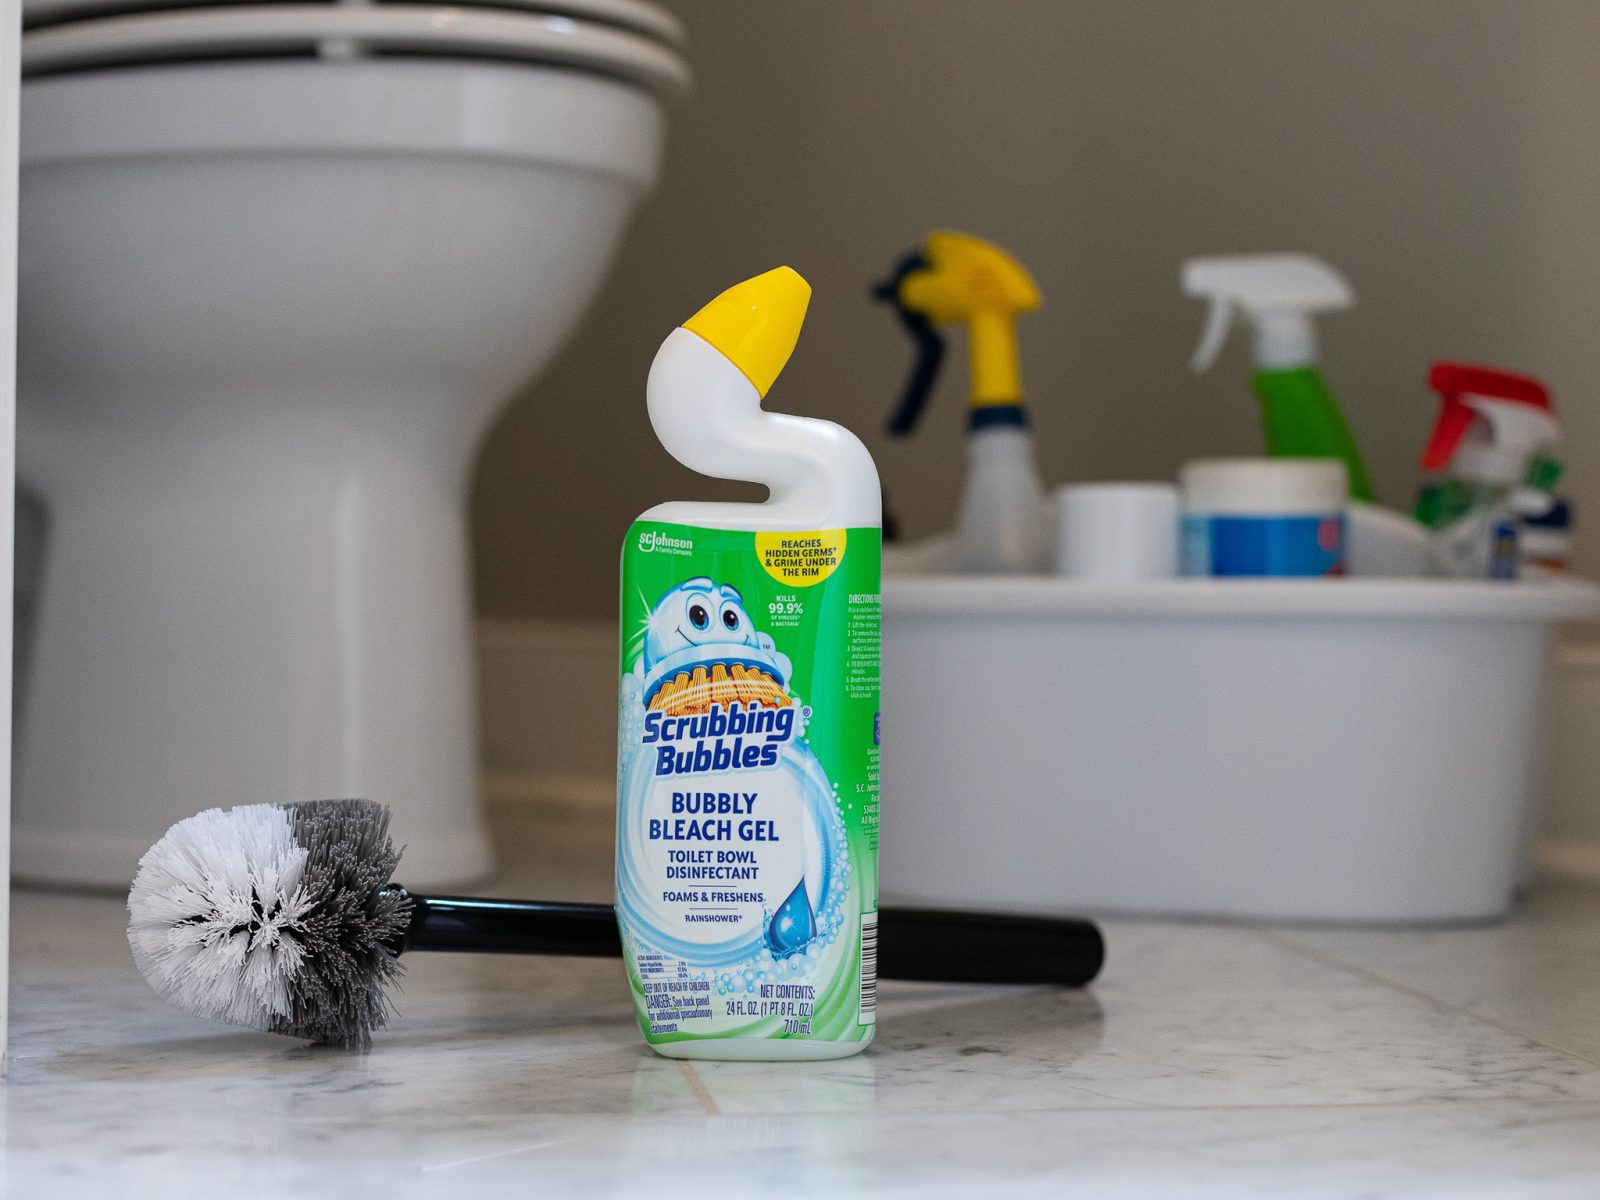 Scrubbing Bubbles Toilet Bowl Cleaner Just 75¢ At Publix